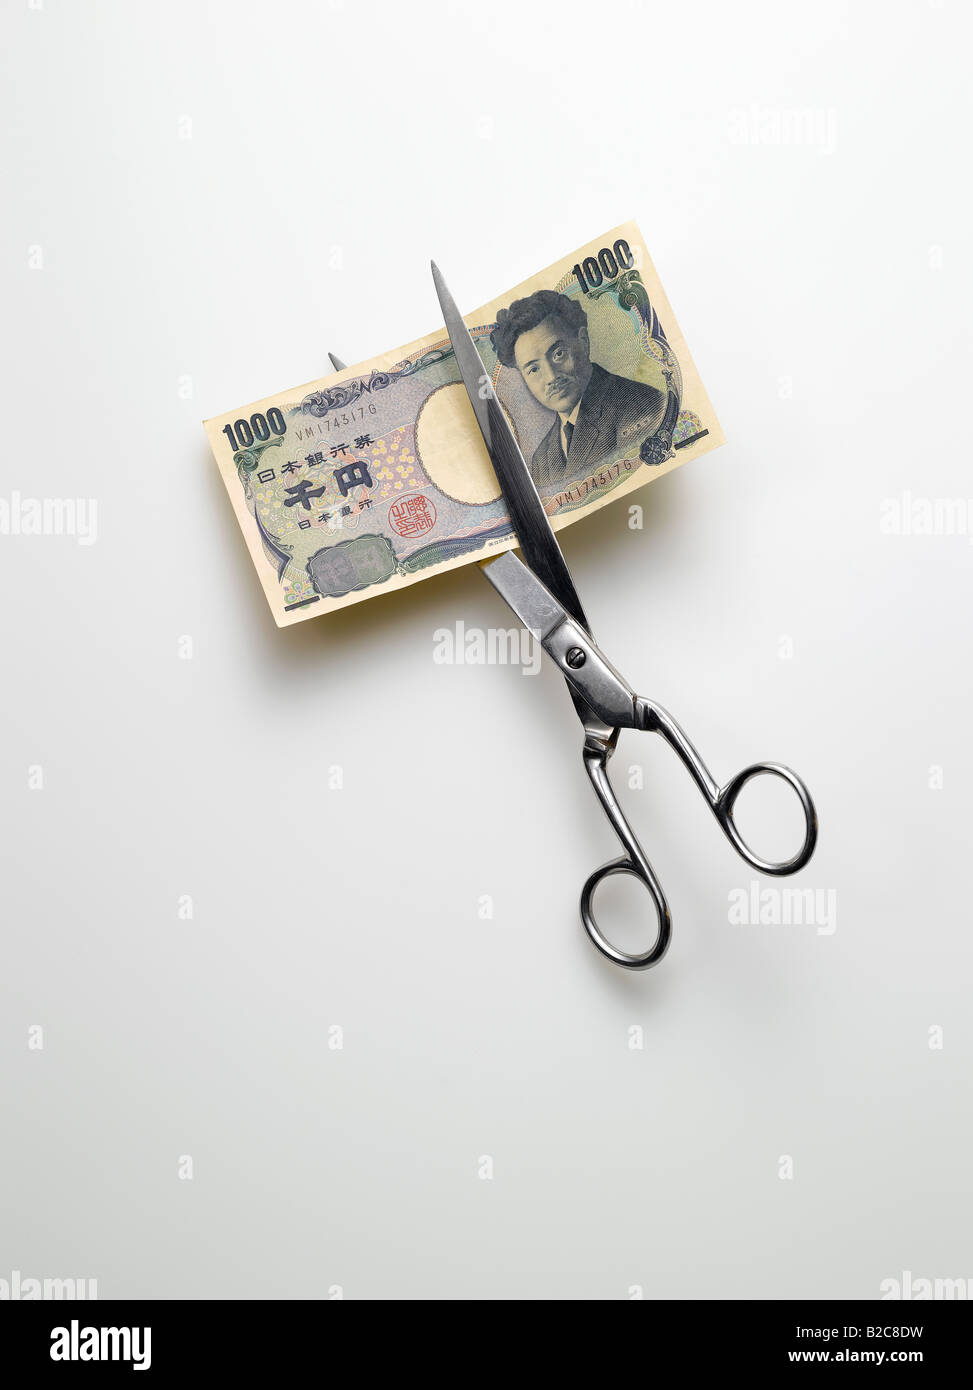 Taglio a forbice yen giapponese denaro su sfondo bianco Foto Stock